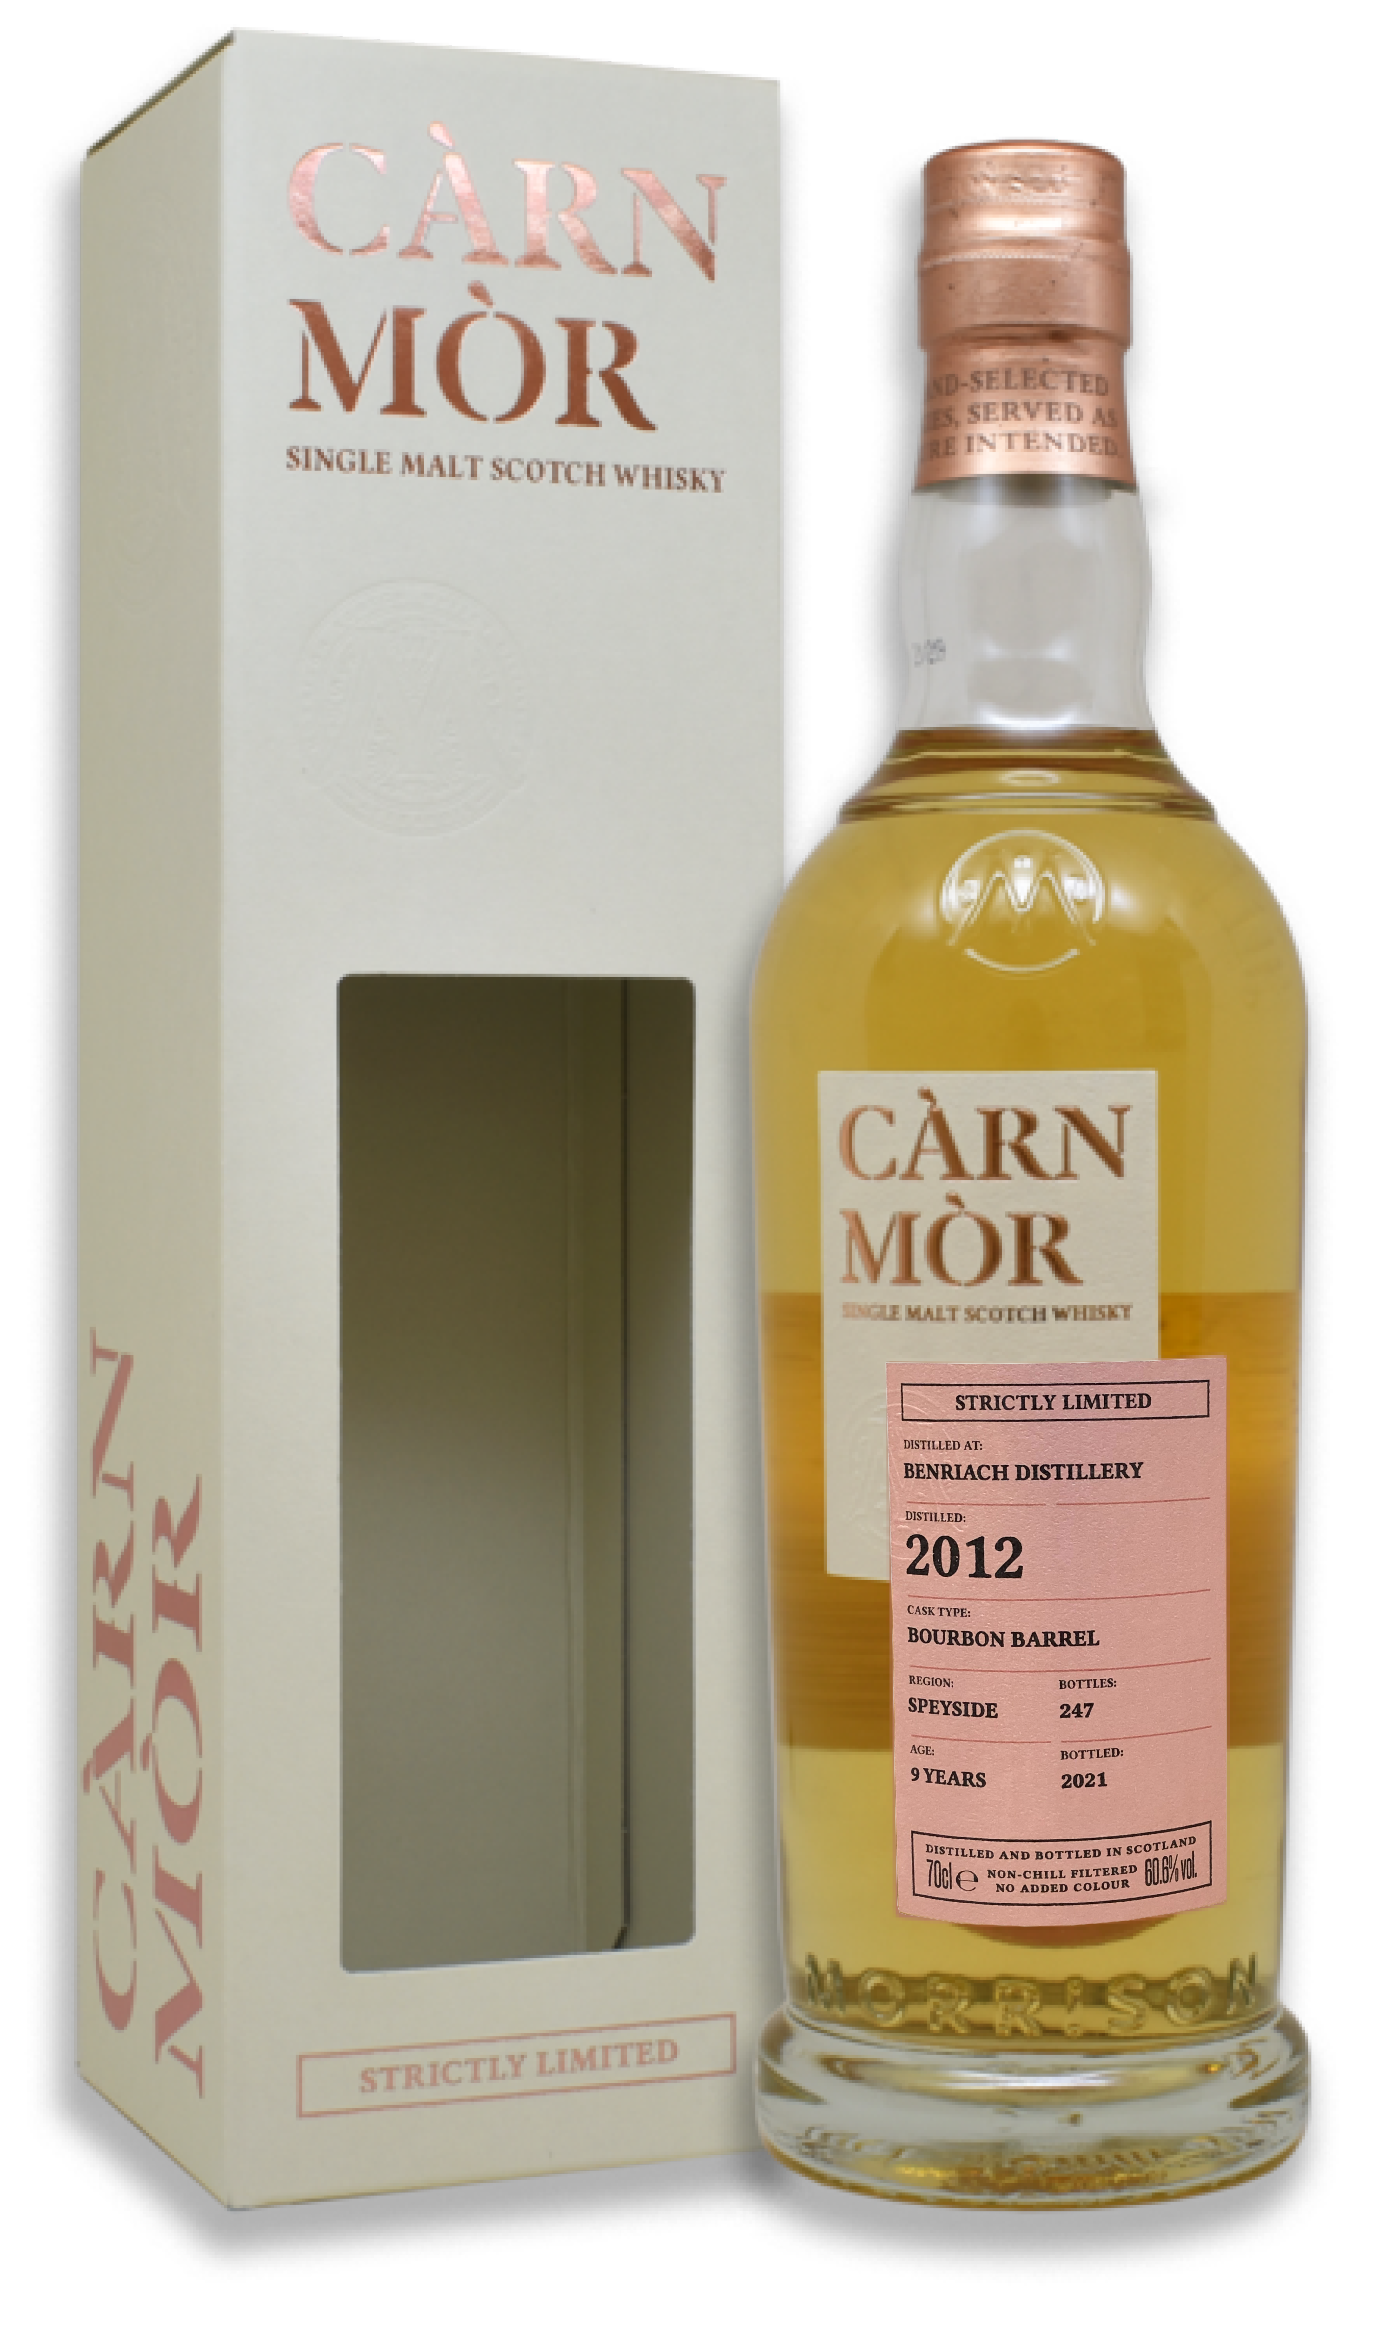 Carn Mor Strictly Limited Benriach 2012 Single Malt Scotch Whisky 卡蒙嚴選系列Benriach 2012單一麥芽蘇格蘭威士忌(原酒)